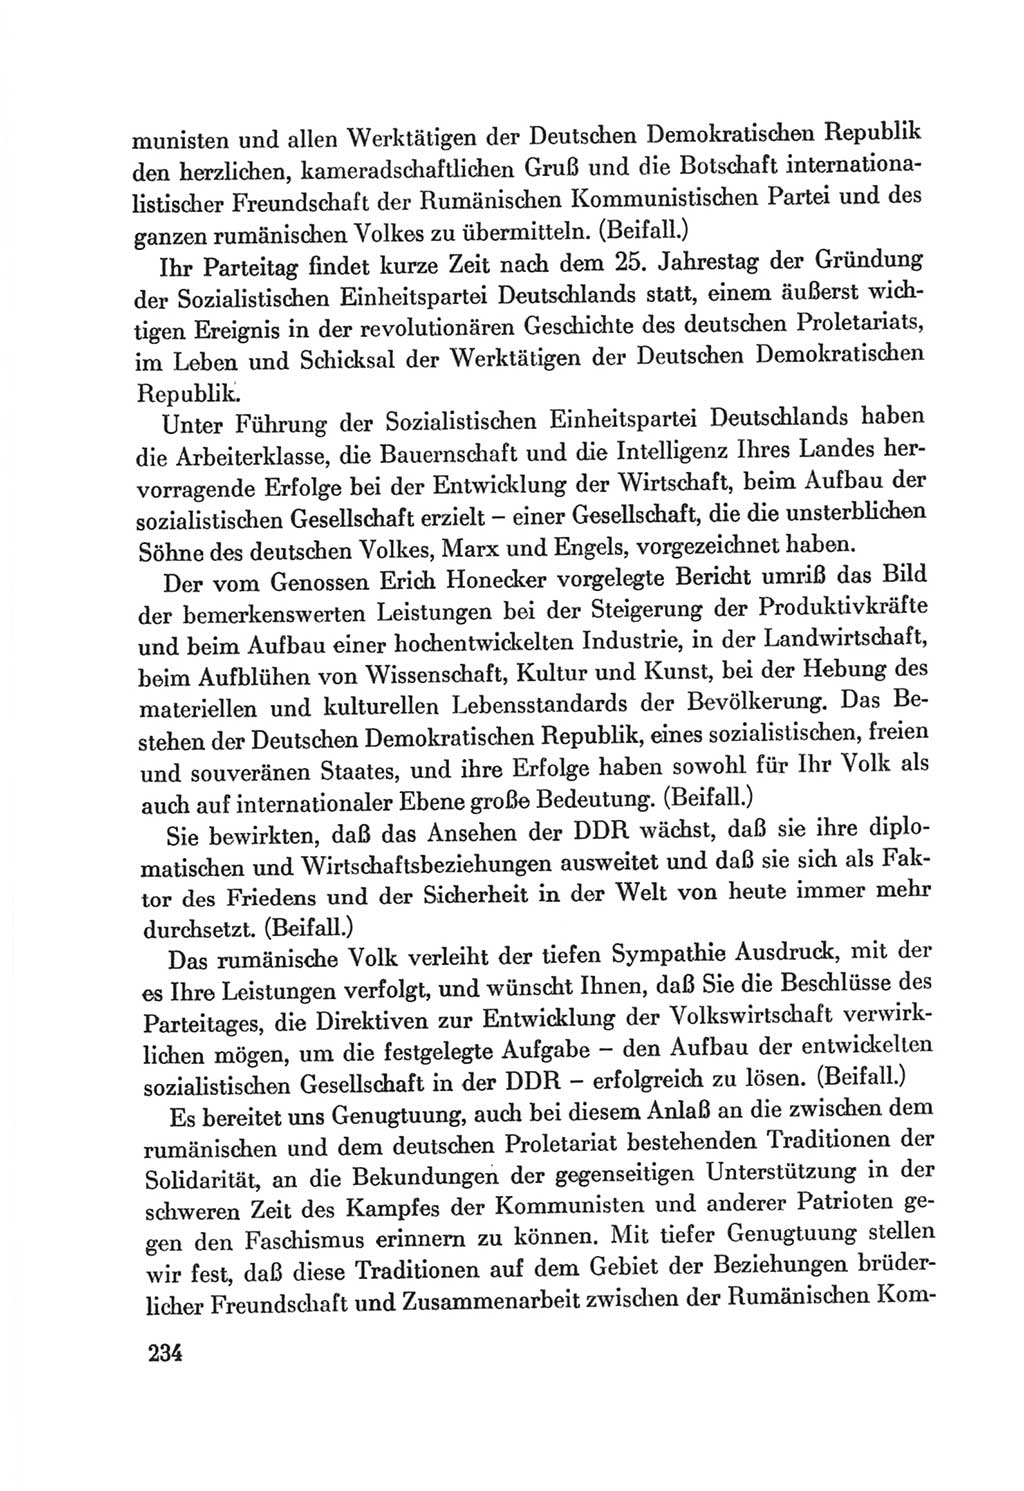 Protokoll der Verhandlungen des Ⅷ. Parteitages der Sozialistischen Einheitspartei Deutschlands (SED) [Deutsche Demokratische Republik (DDR)] 1971, Band 1, Seite 234 (Prot. Verh. Ⅷ. PT SED DDR 1971, Bd. 1, S. 234)